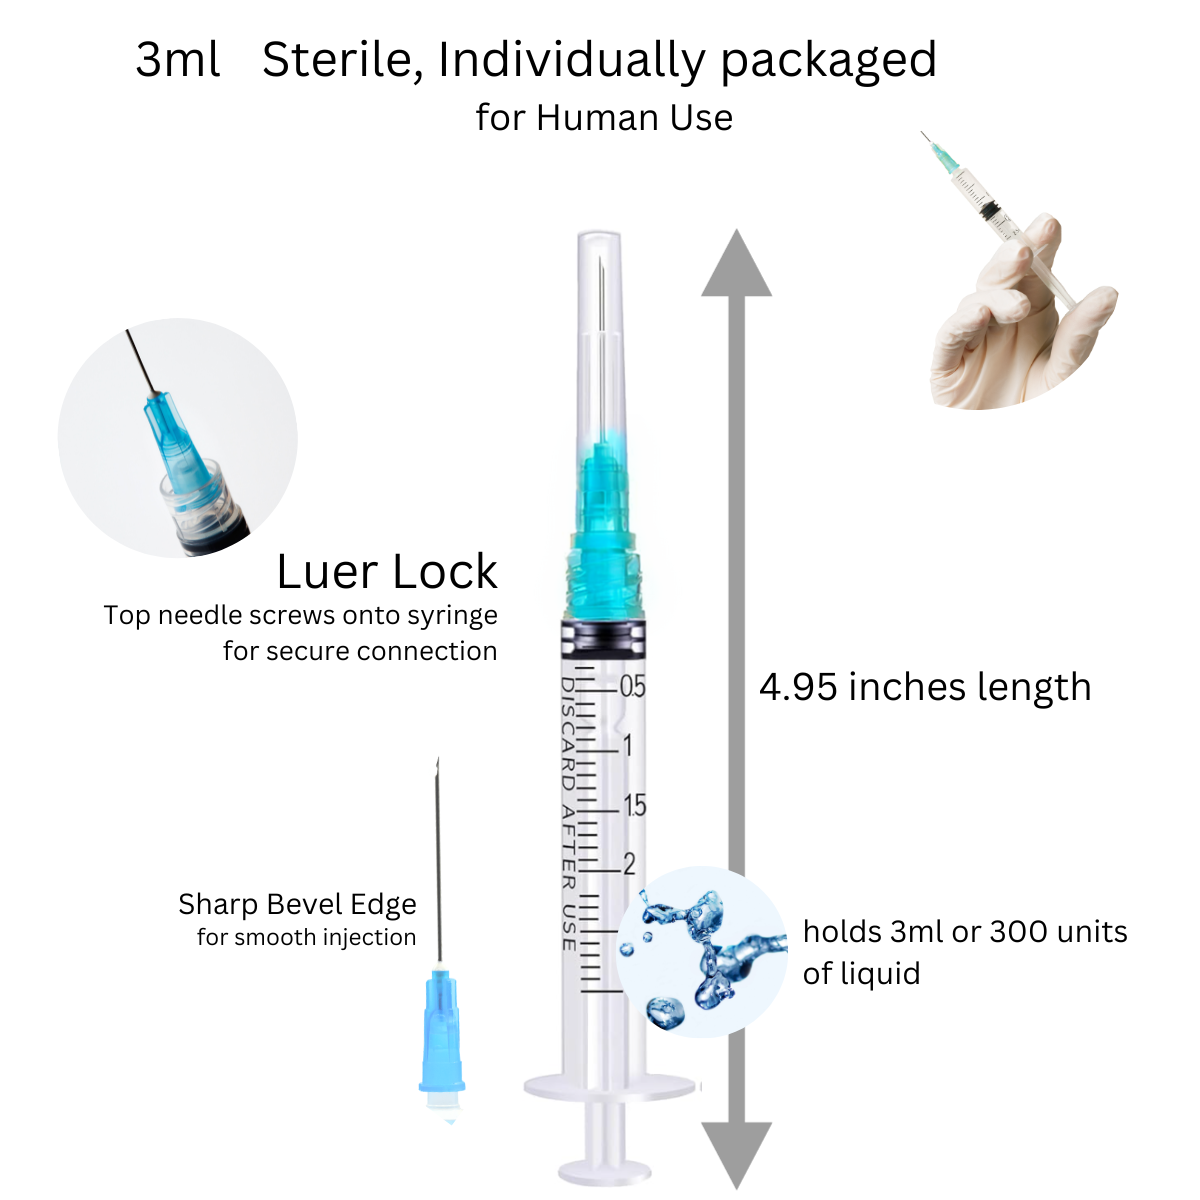 Nipro 3cc, 25G x 1" Syringe with Needle (50pk)